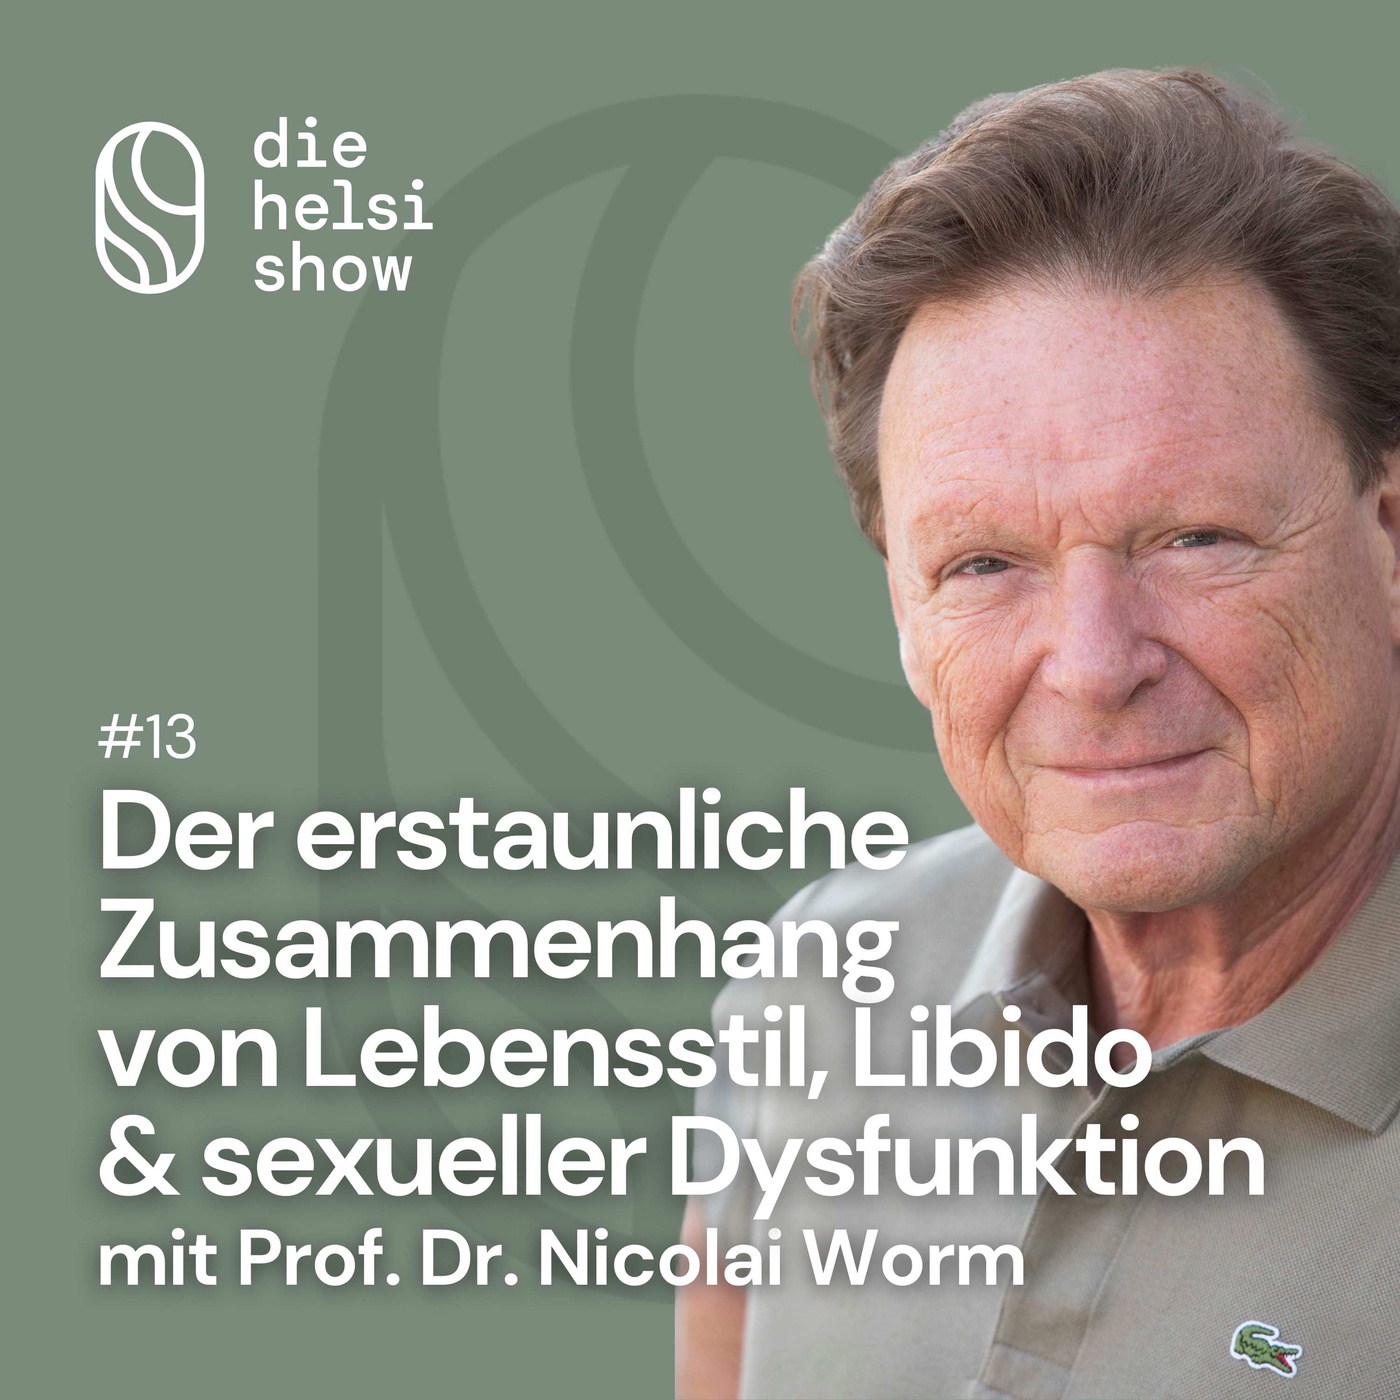 Der erstaunliche Zusammenhang von Lebensstil, Libido & sexueller Dysfunktion mit Prof. Dr. Nicolai Worm